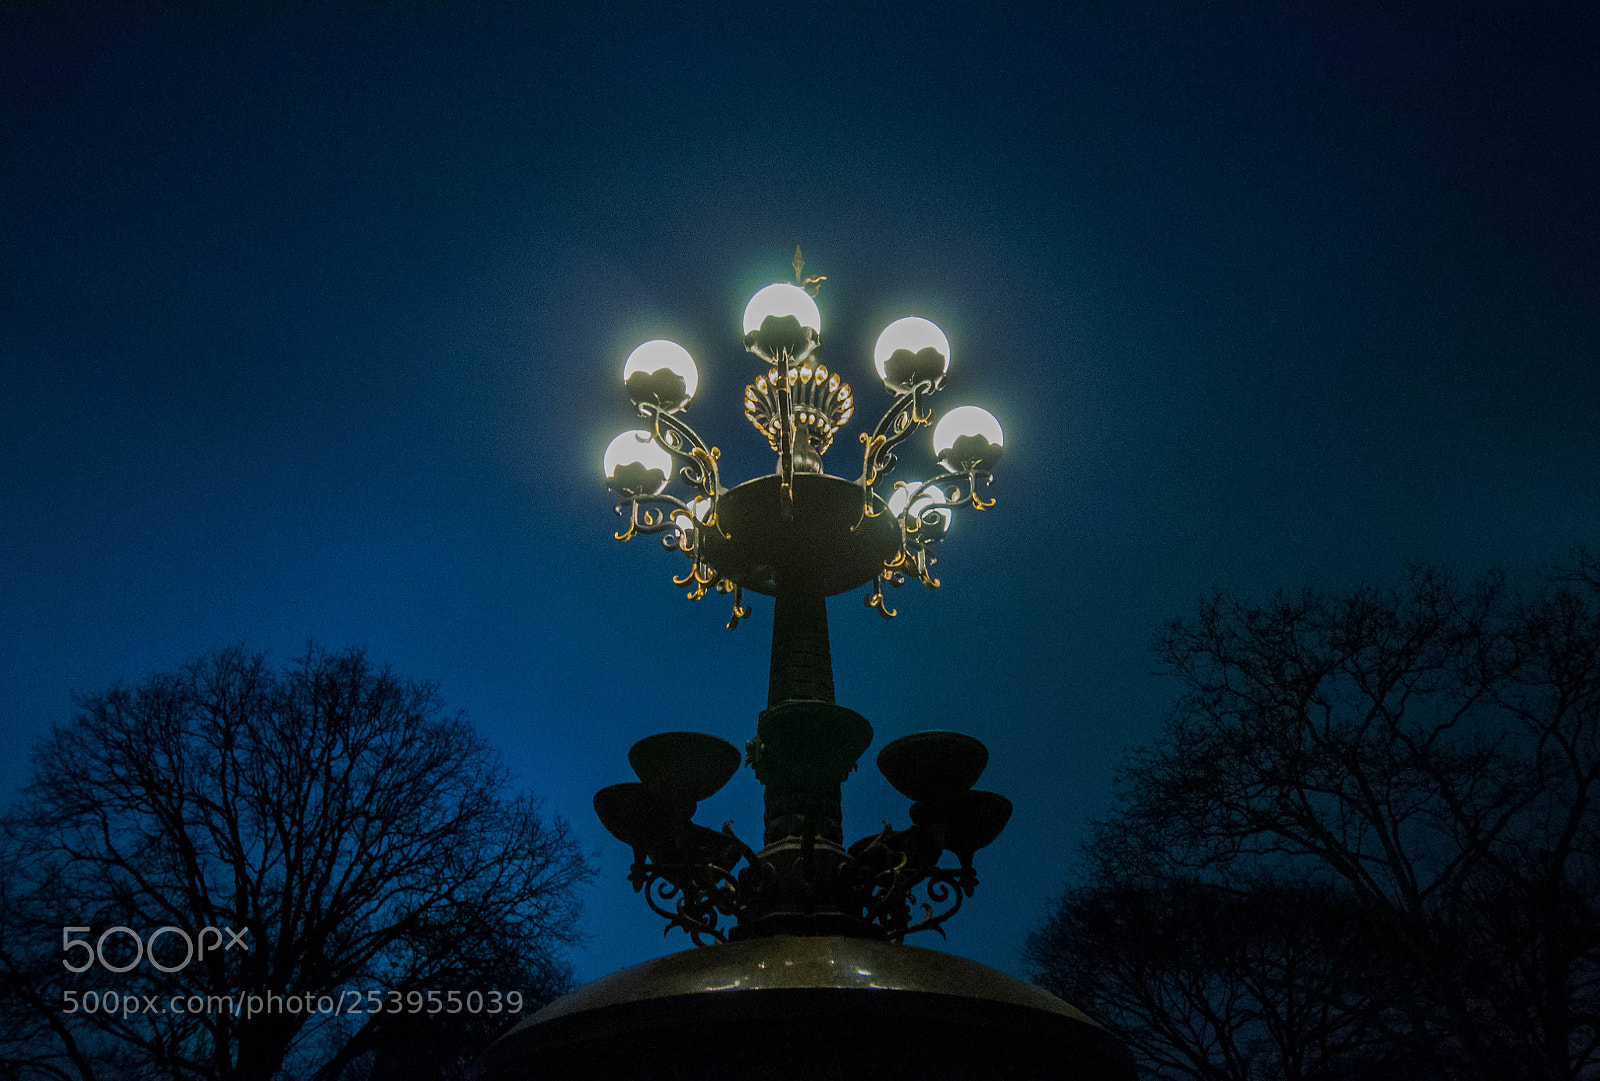 Nikon D90 sample photo. Central park blue lamps photography